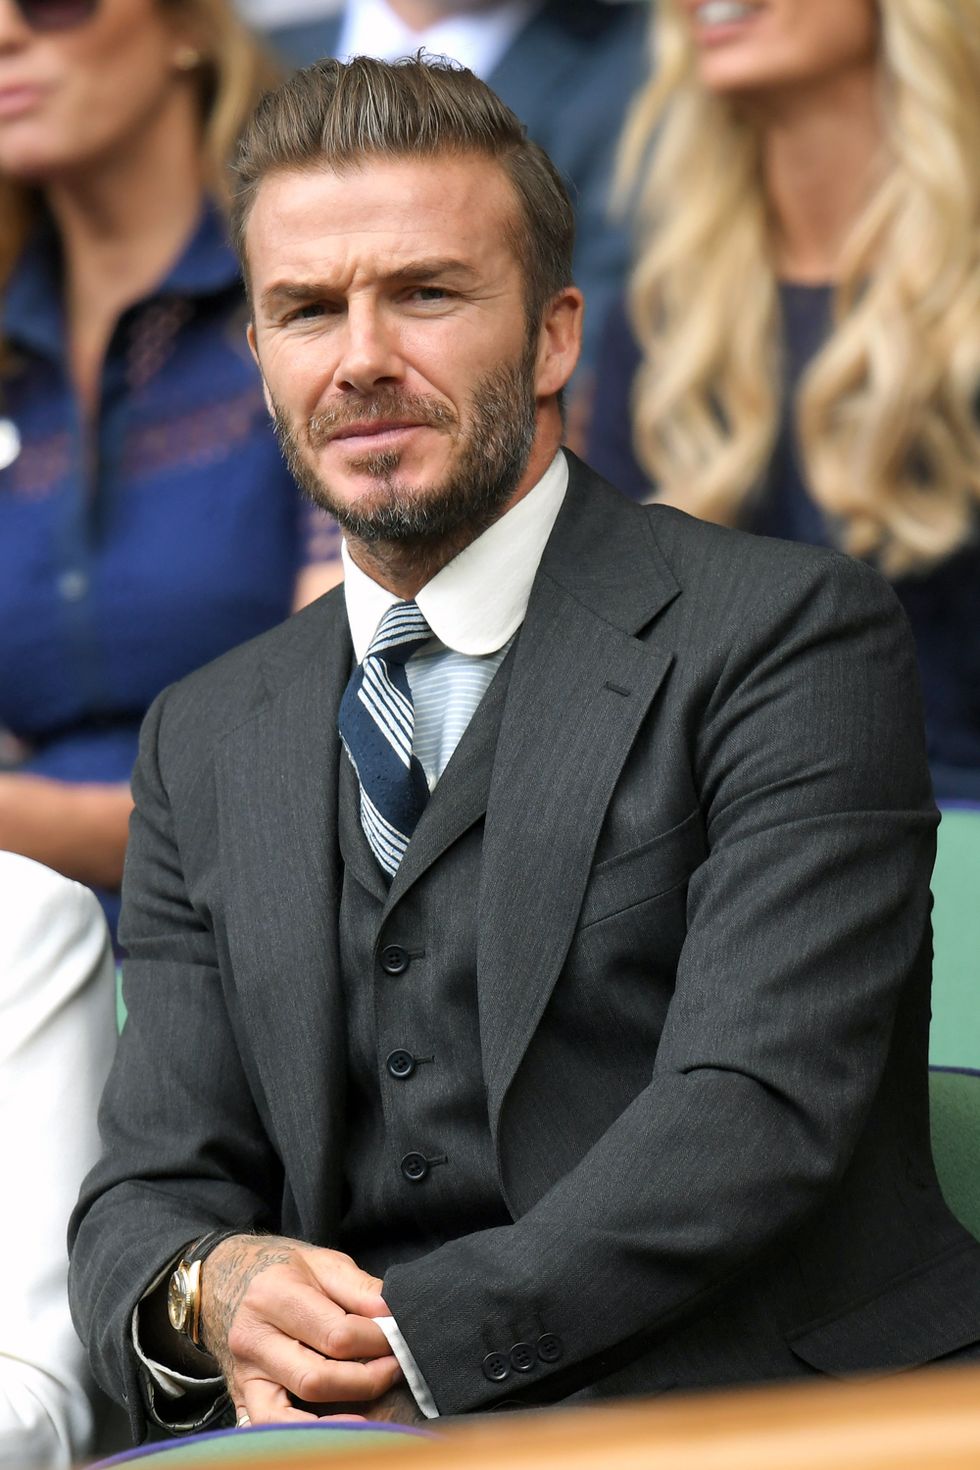 David Beckham wearing Black Long Sleeve Shirt, Black Chinos, Tan